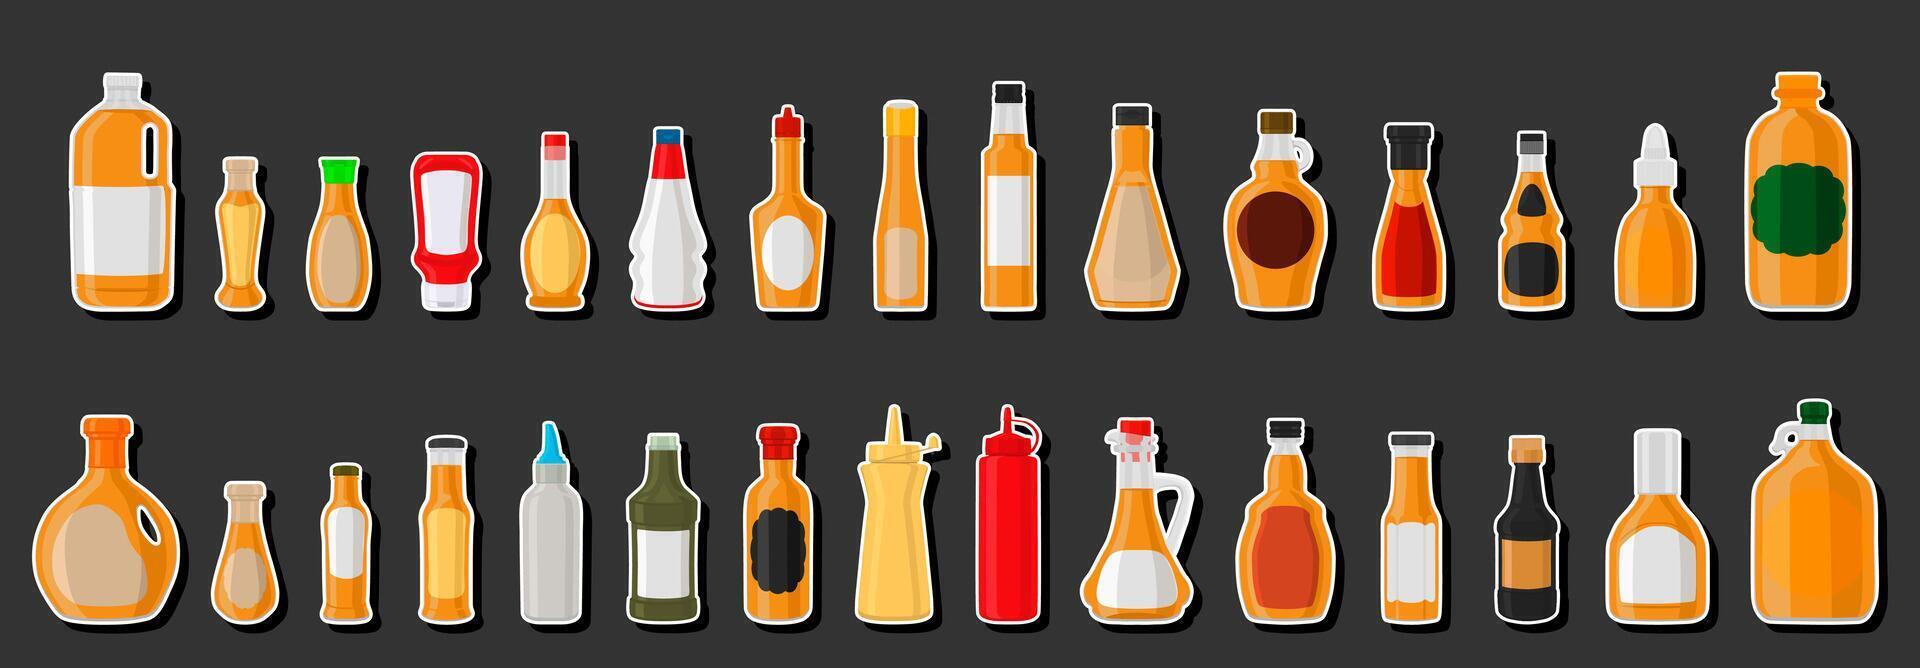 illustrazione sul kit a tema varie bottiglie di vetro riempite di sciroppo liquido per cocktail vettore